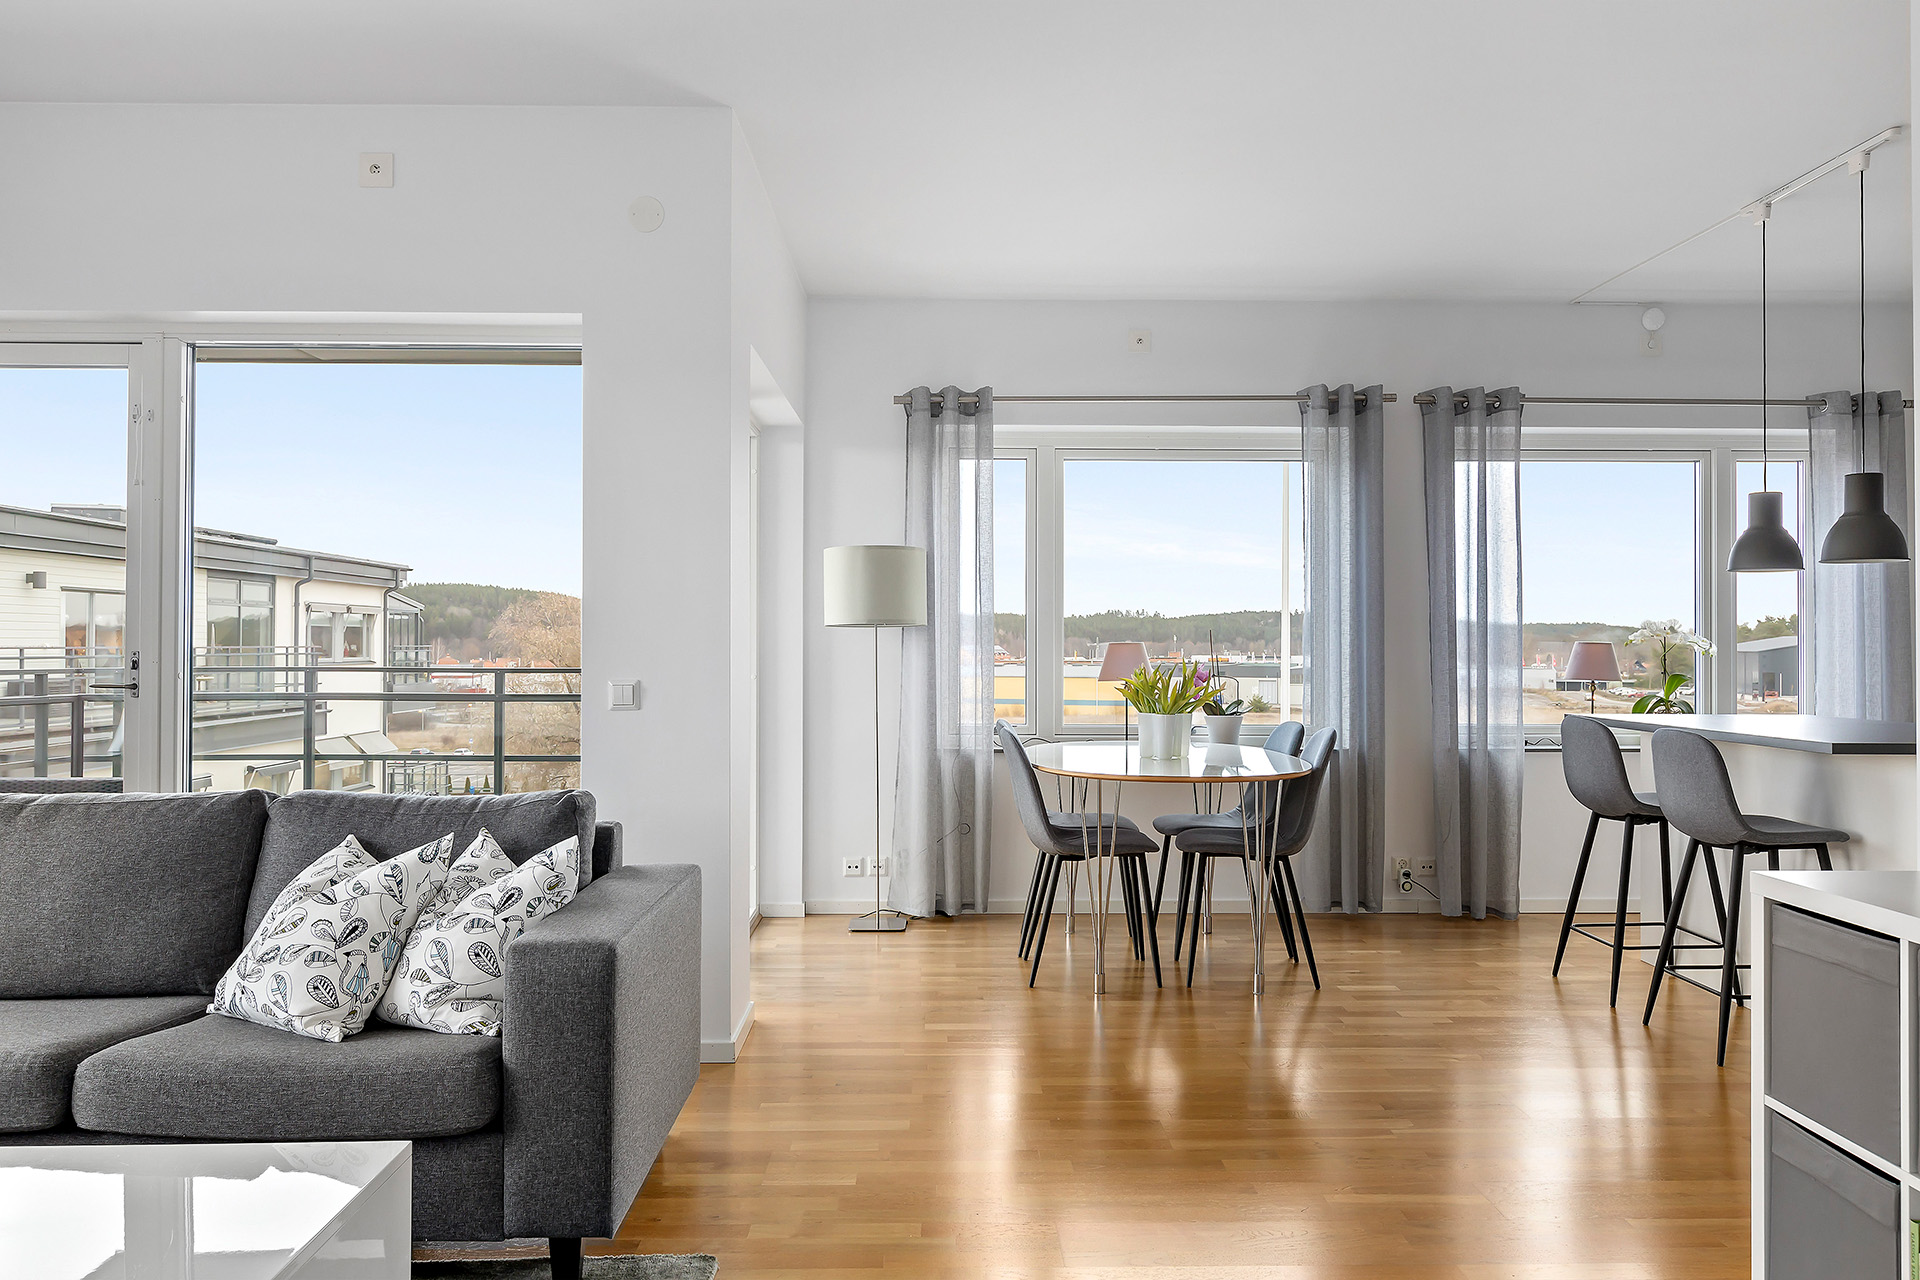 Köp bostad - Ljus möblerad lägenhet med fin utsikt med elitefast